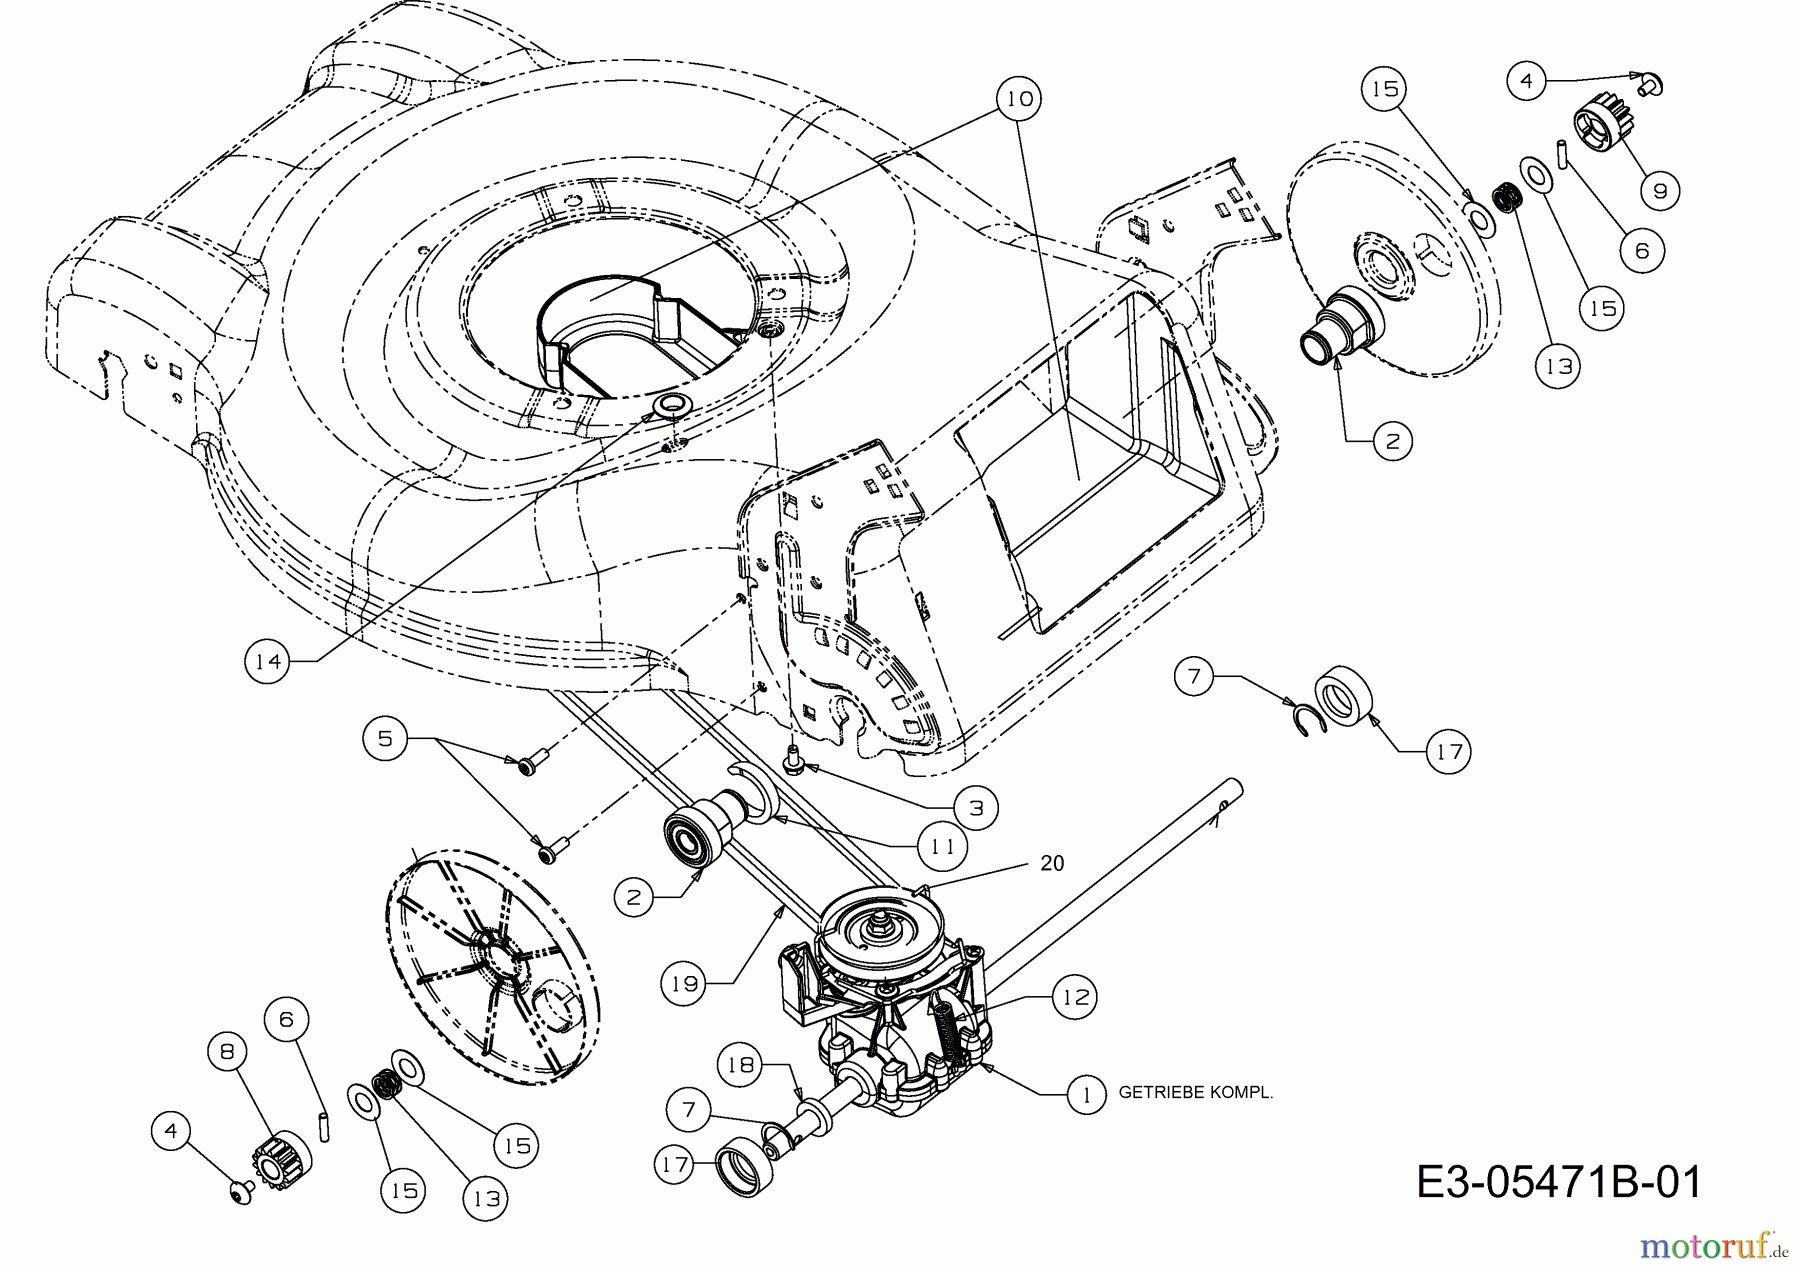  Mastercut Motormäher mit Antrieb MC 46 SPB 12A-J75B659  (2015) Getriebe